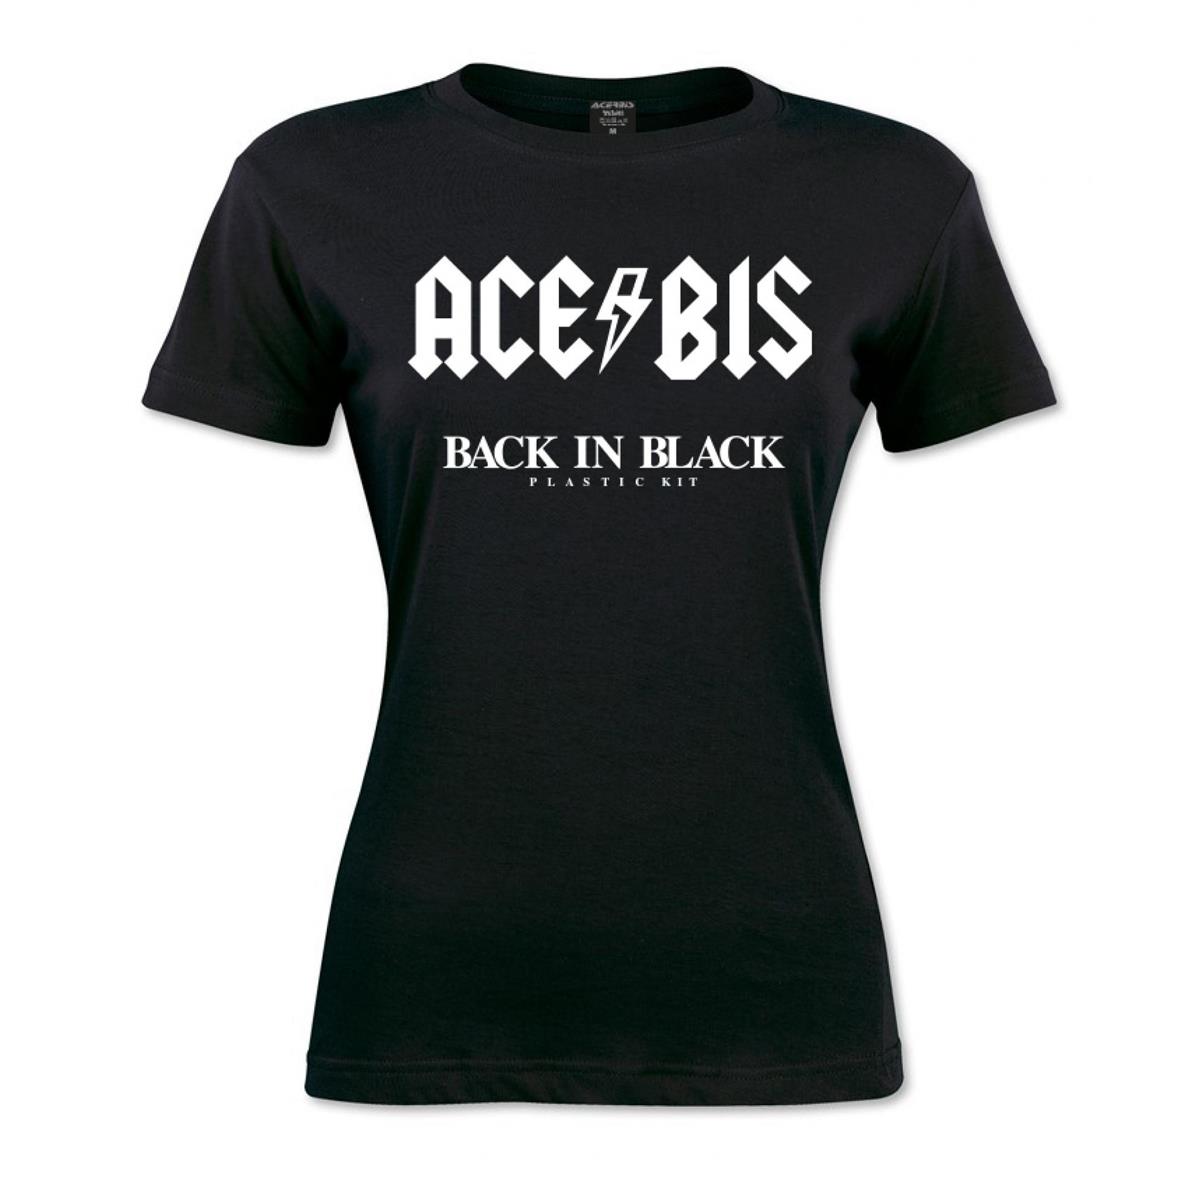 Acerbis Girls T-Shirt Back in Black Black